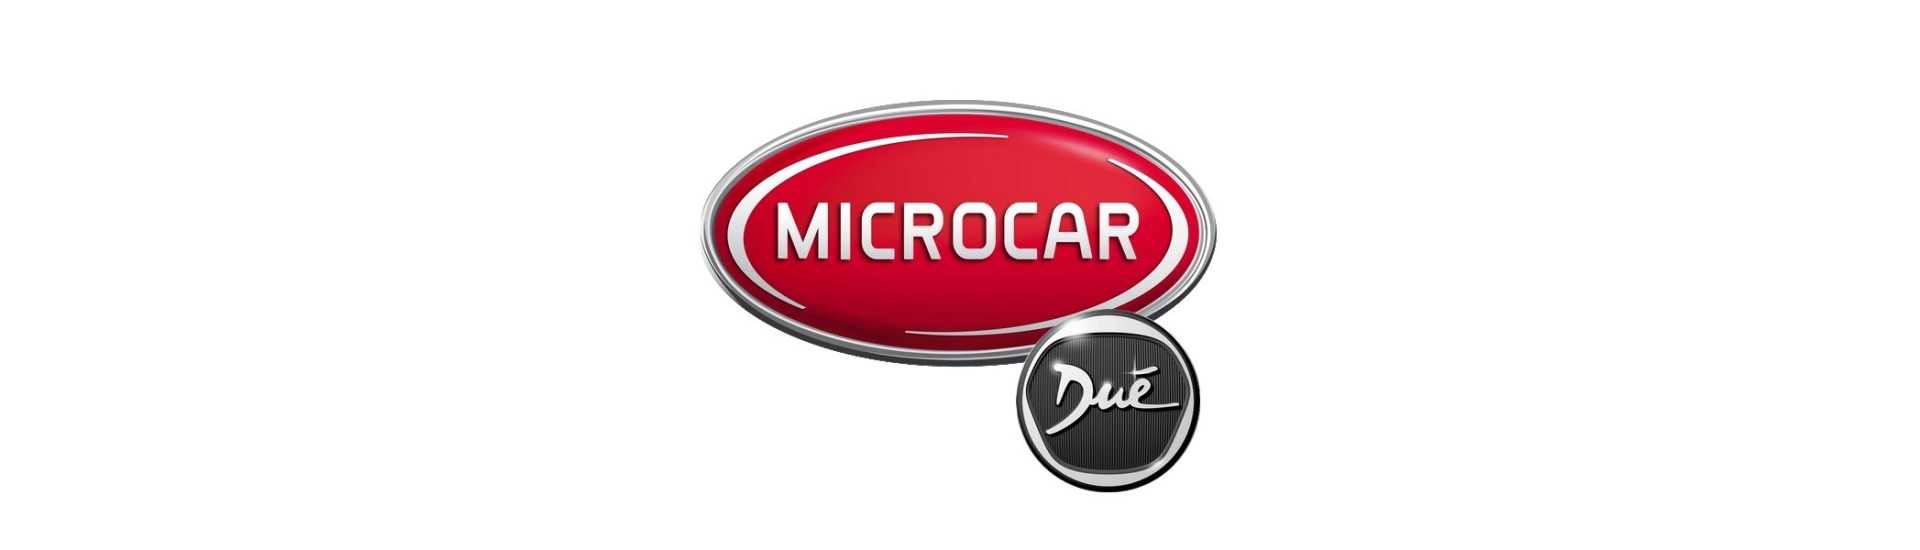 Motor de limpiaparabrisas de hielo mejor precio coche sin licencia Microcar Dué